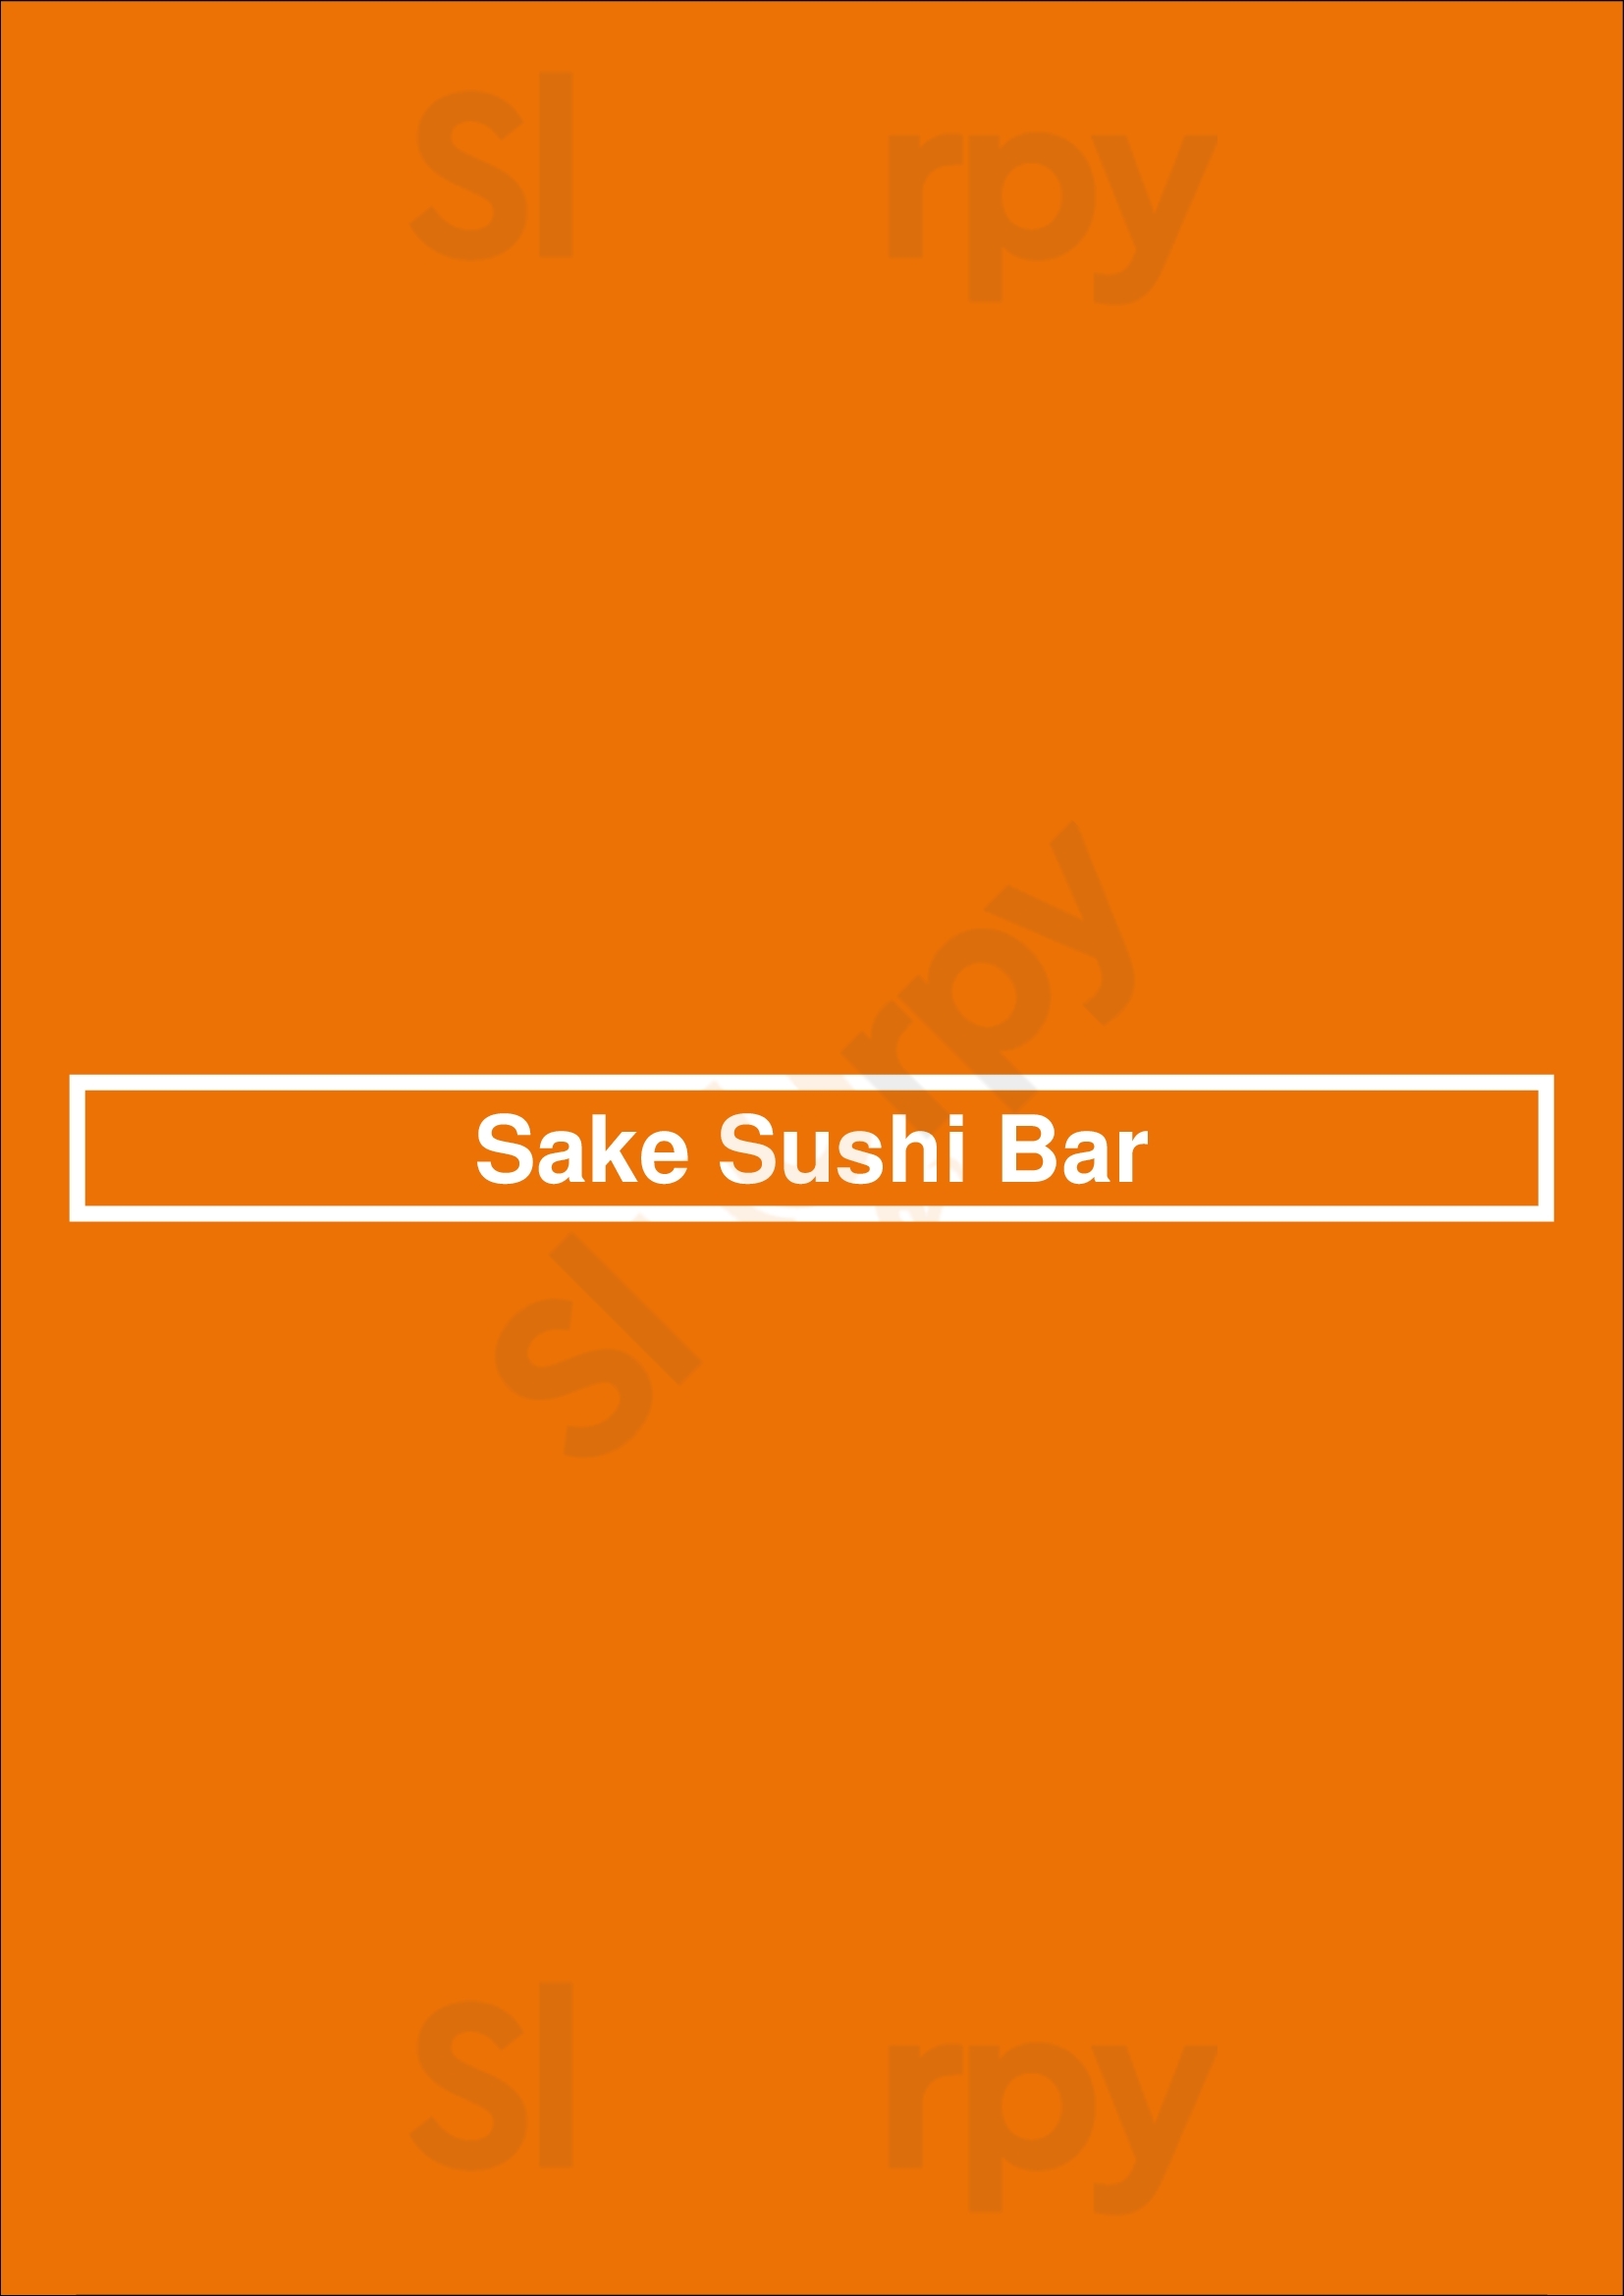 Sake Sushi Bar Berlin Menu - 1